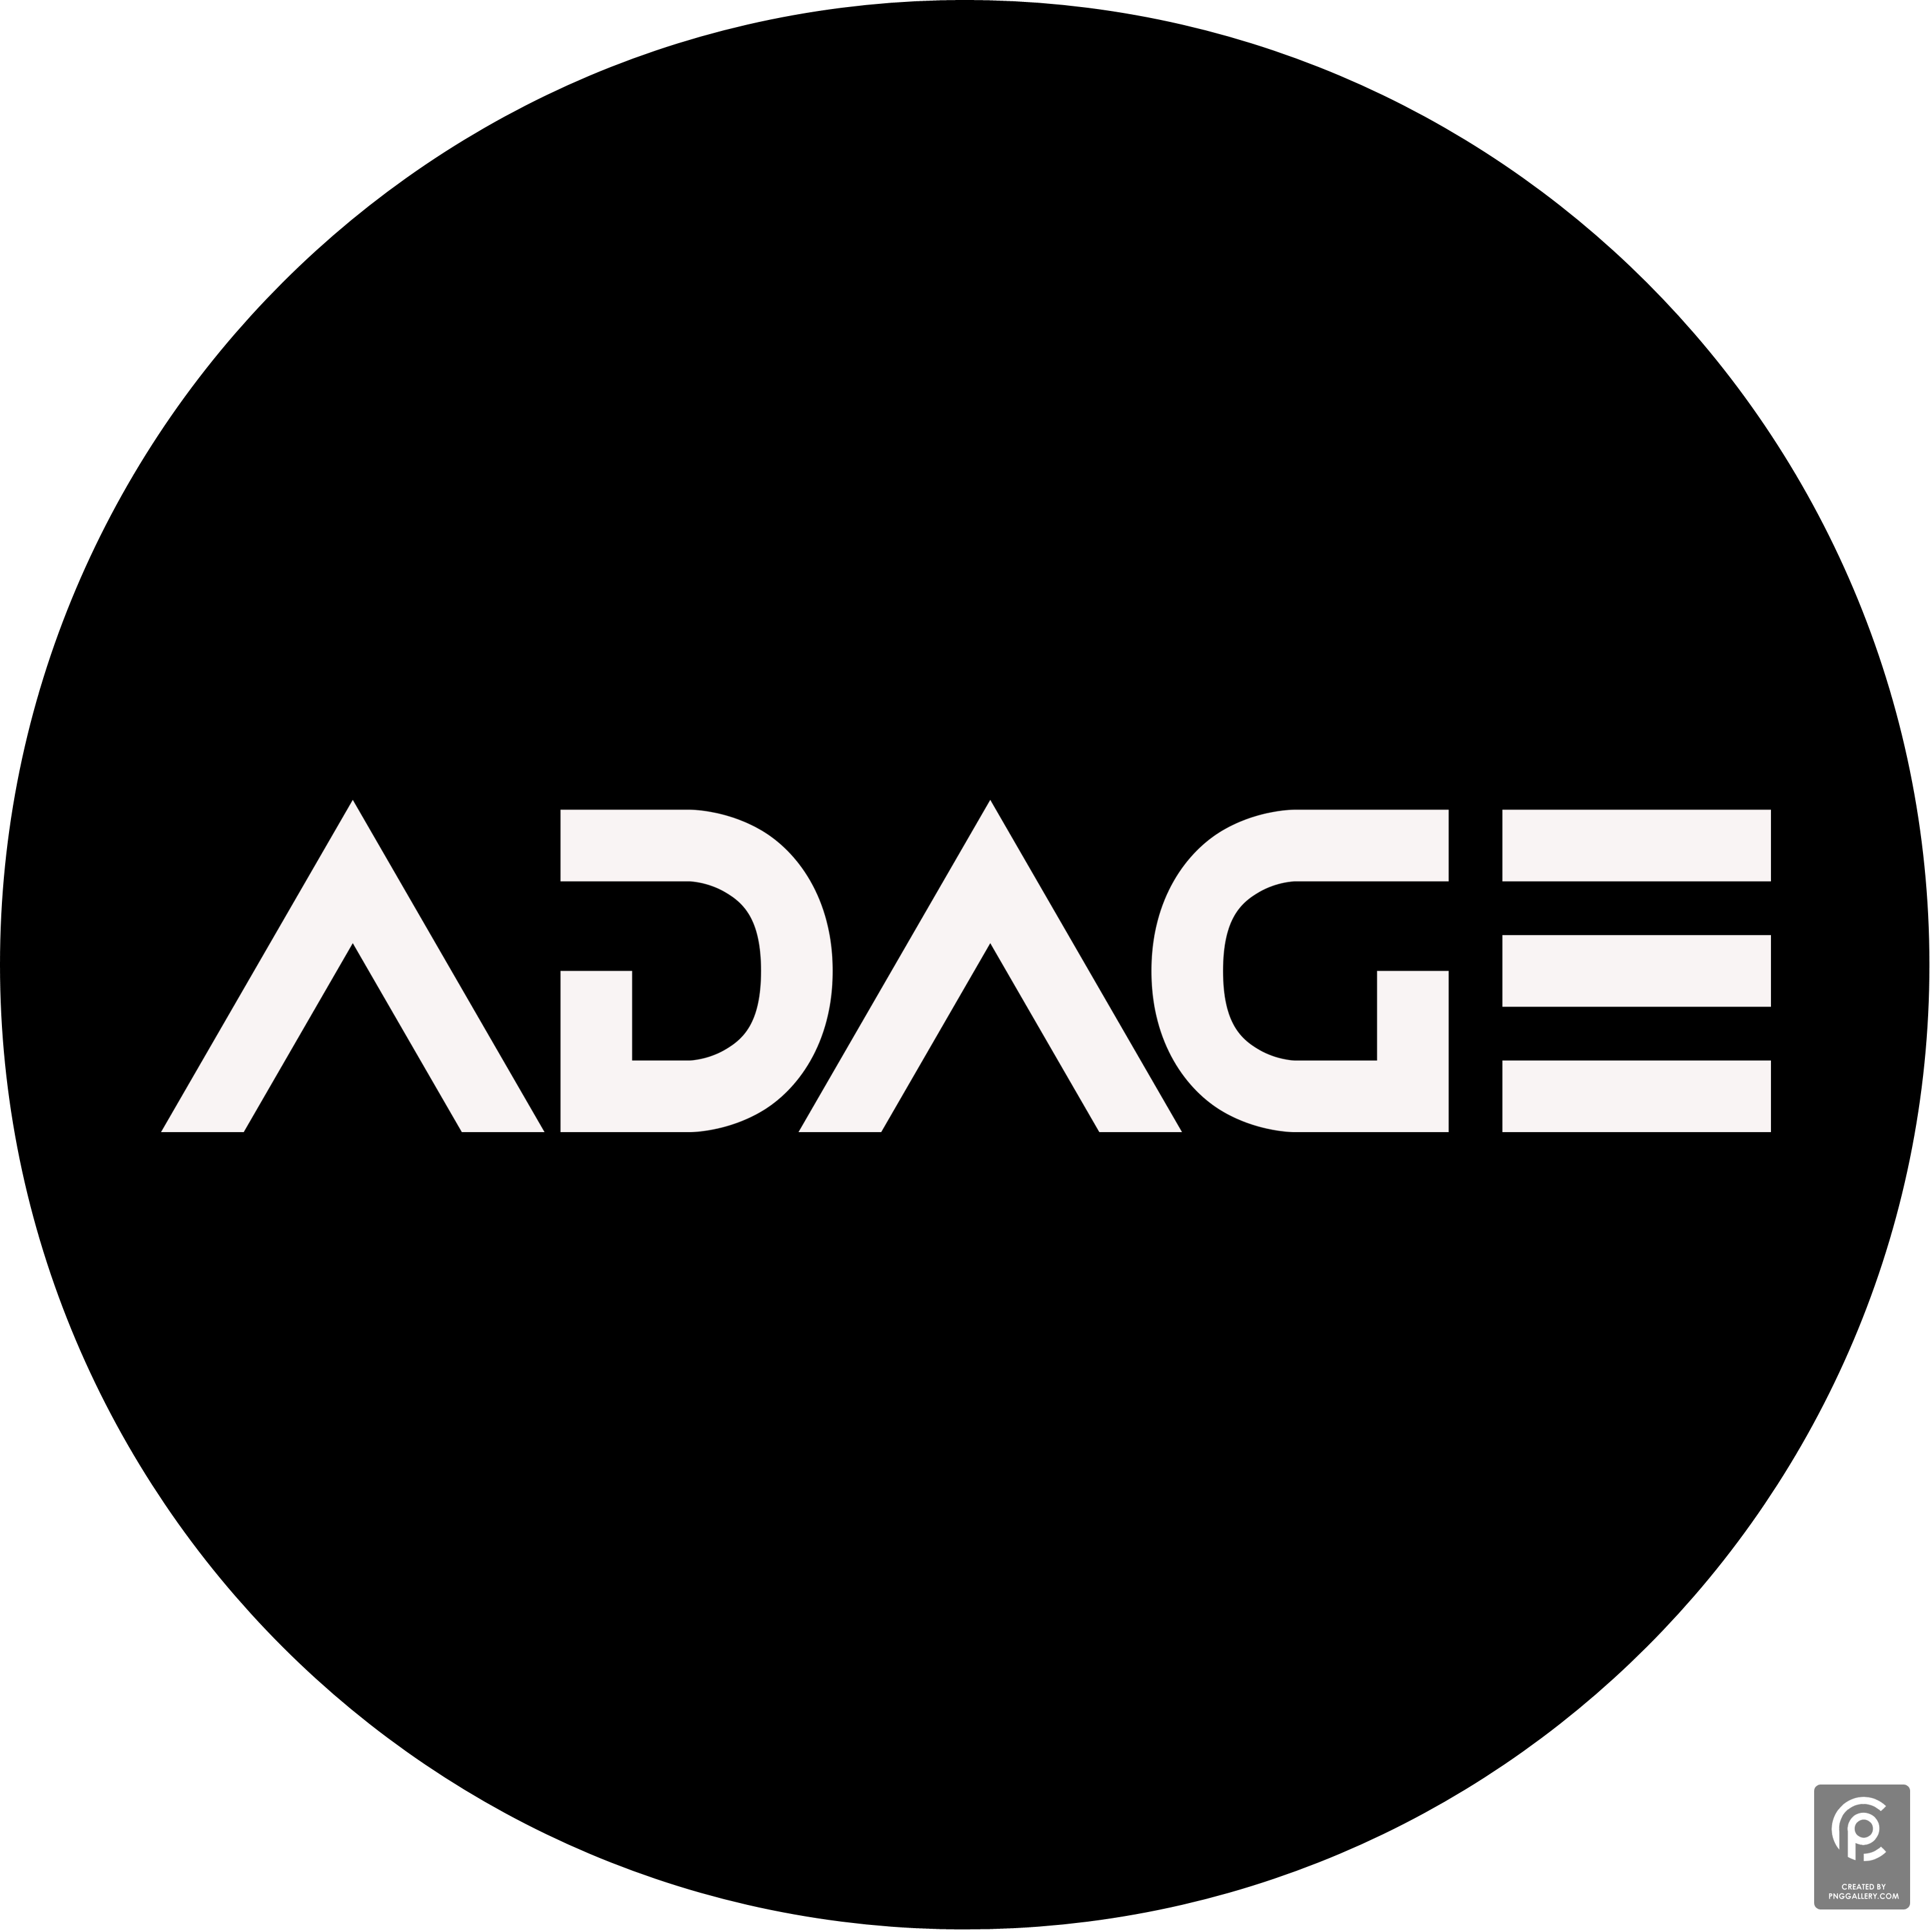 Adage Inc Logo Transparent Clipart